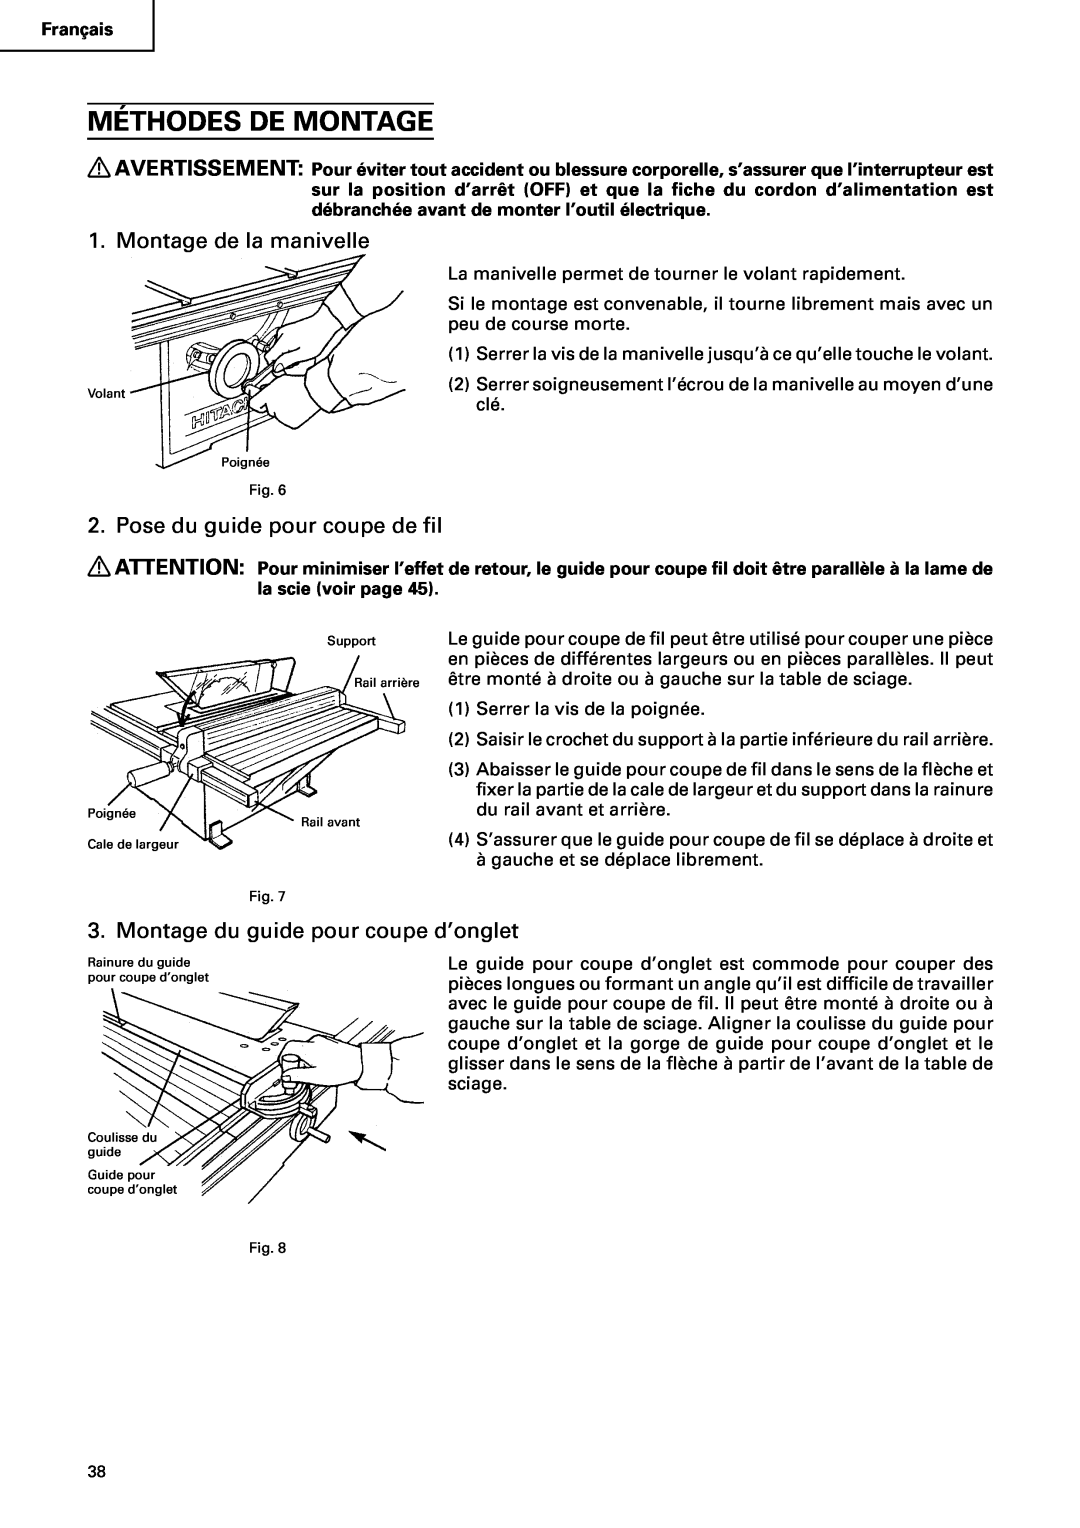 Hitachi C10RA2 instruction manual Méthodes De Montage, Montage de la manivelle, Pose du guide pour coupe de fil 